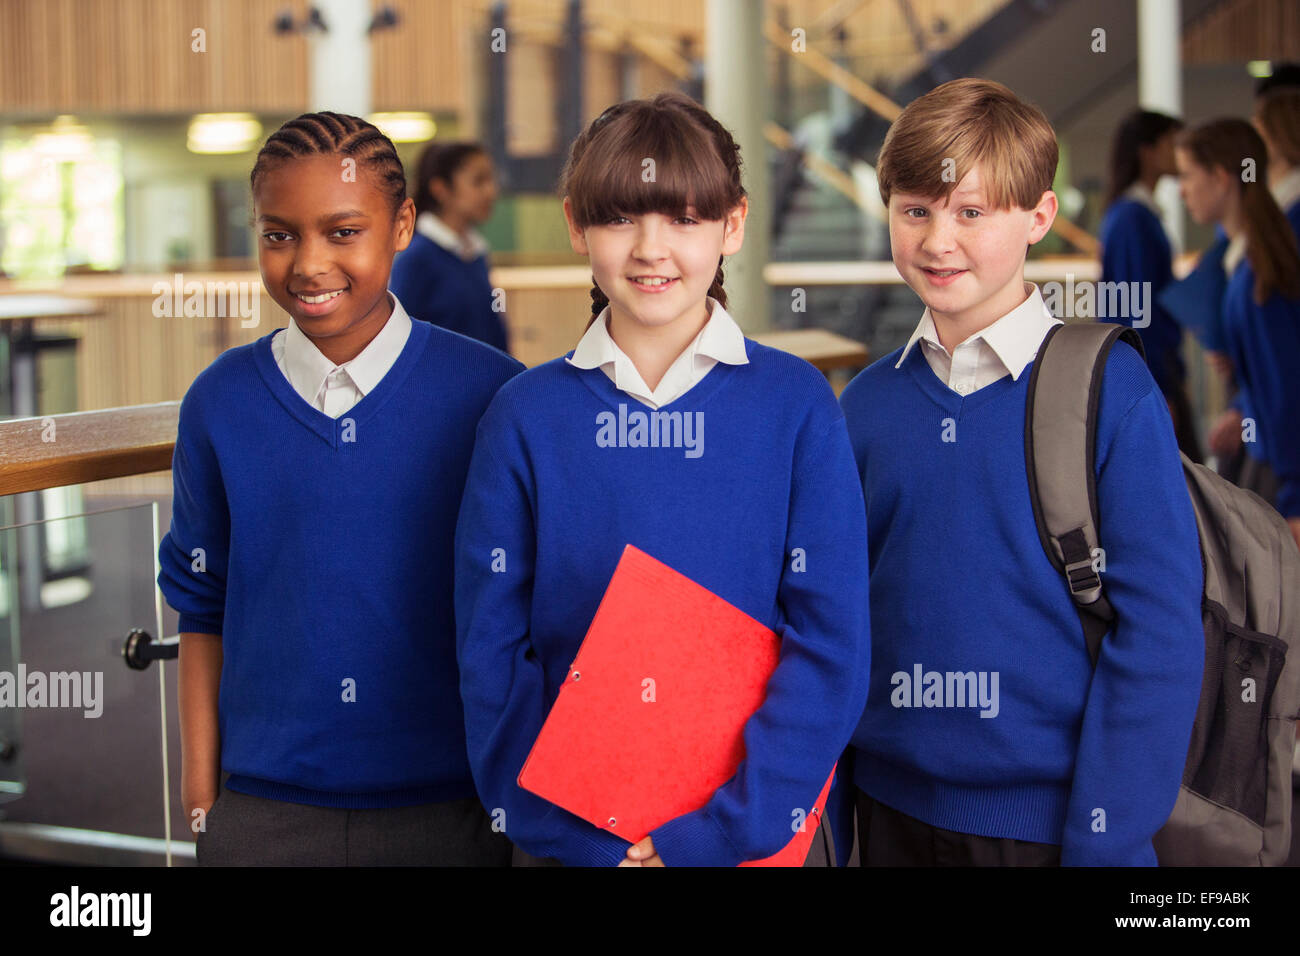 Portrait of three elementary school children wearing blue school uniforms standing in corridor Stock Photo